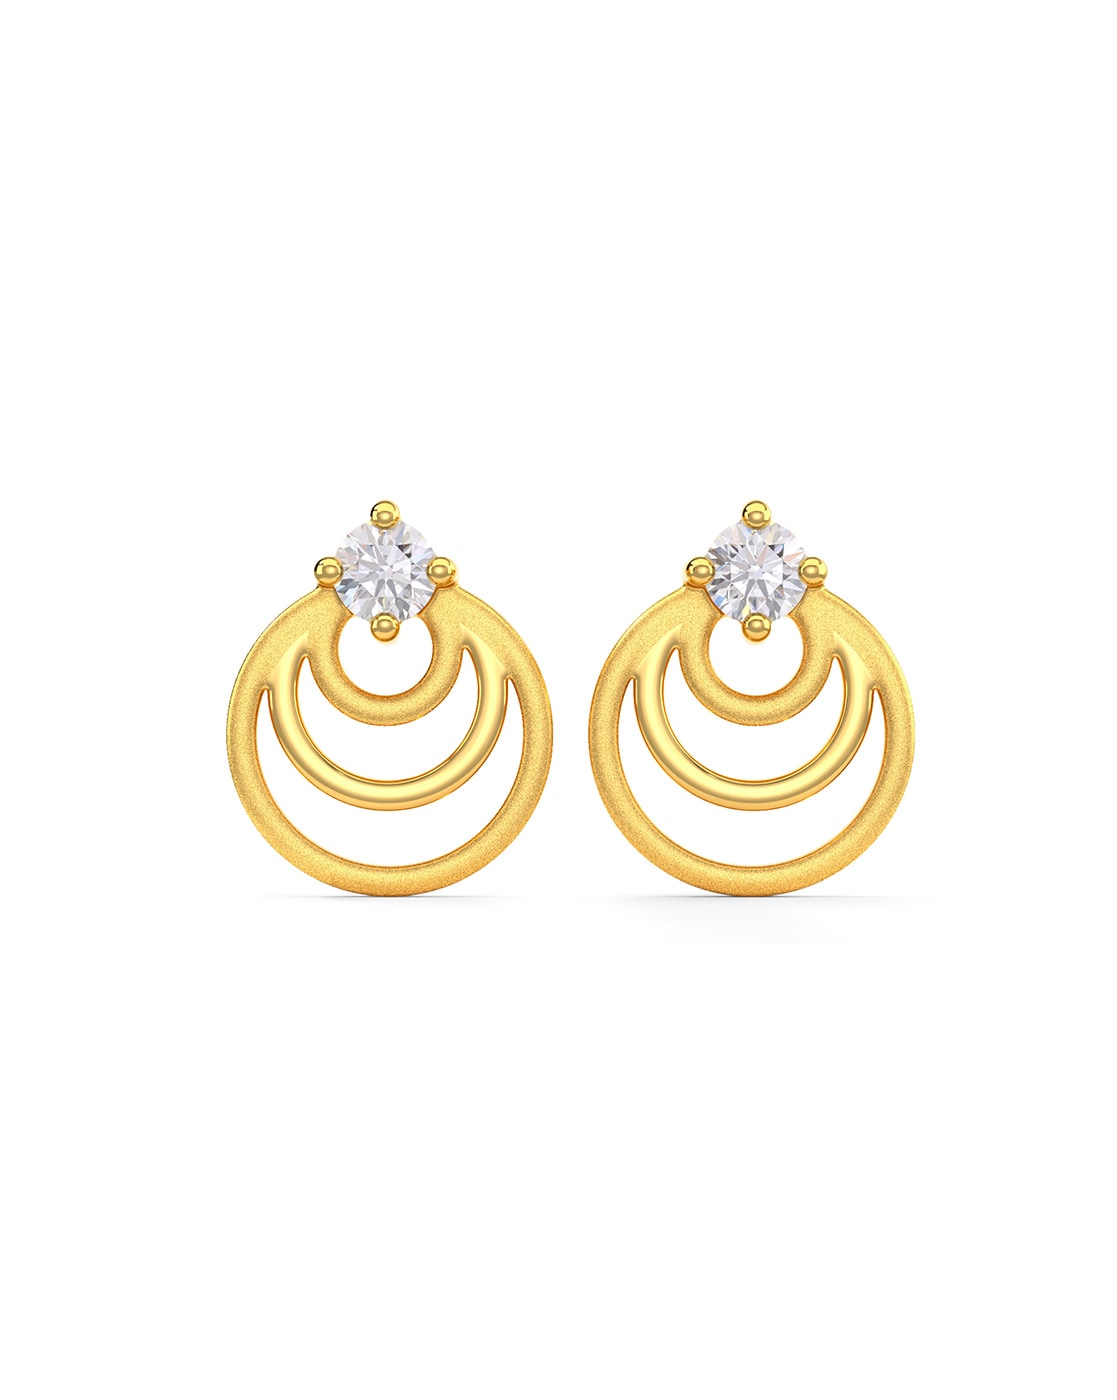 Shop Involute 18K Filigree Gold Stud Earring for Women  Gehna